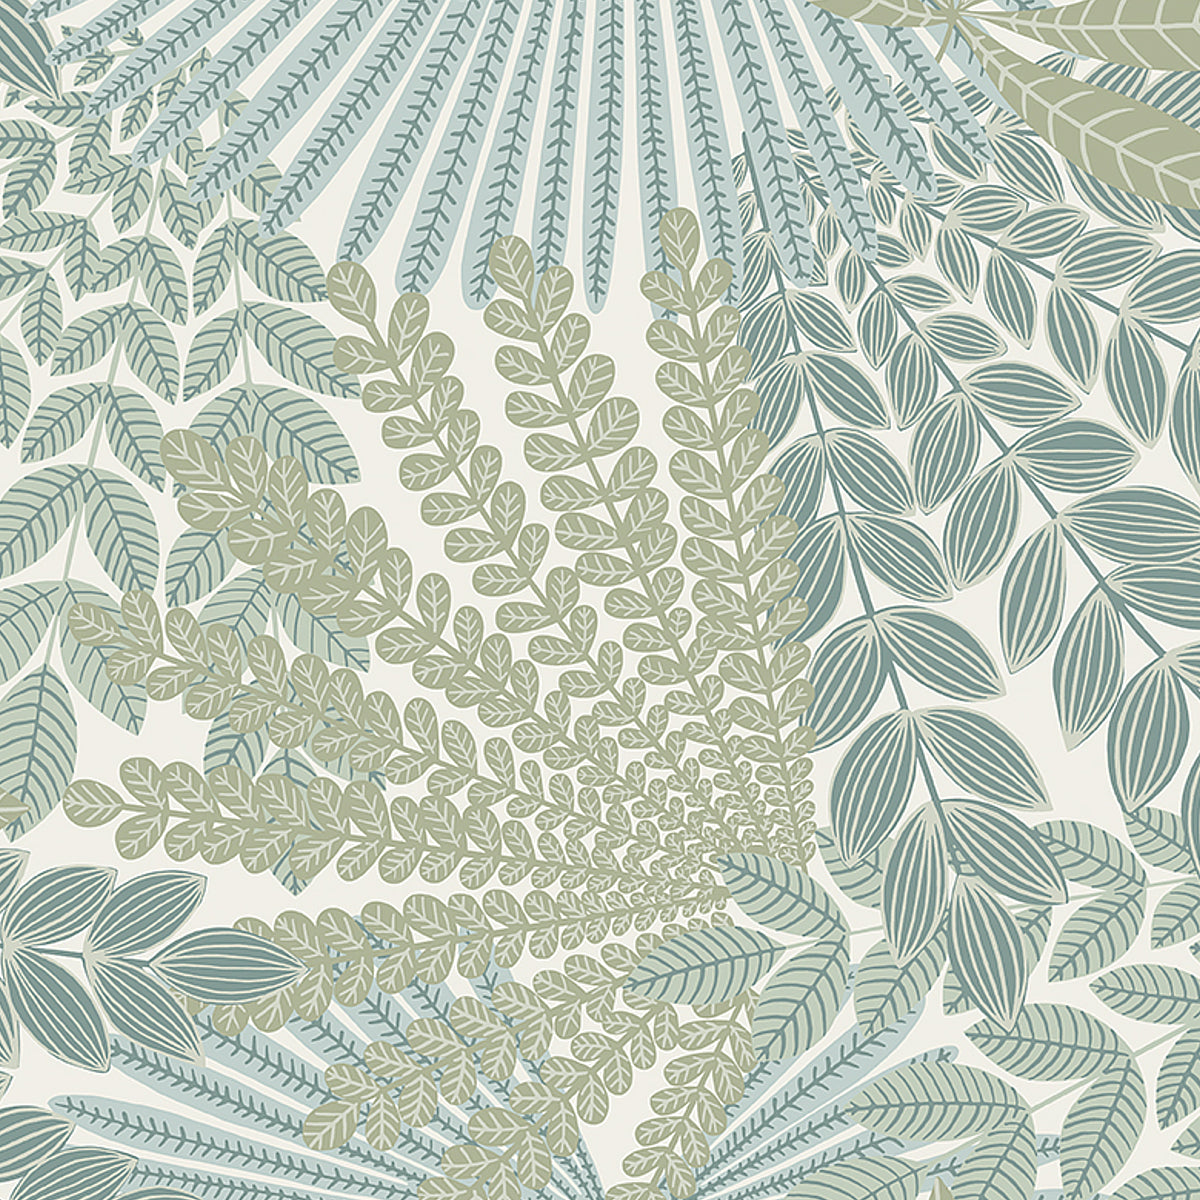 Velvet Leaves Wallpaper Sample - Ivory & Sage